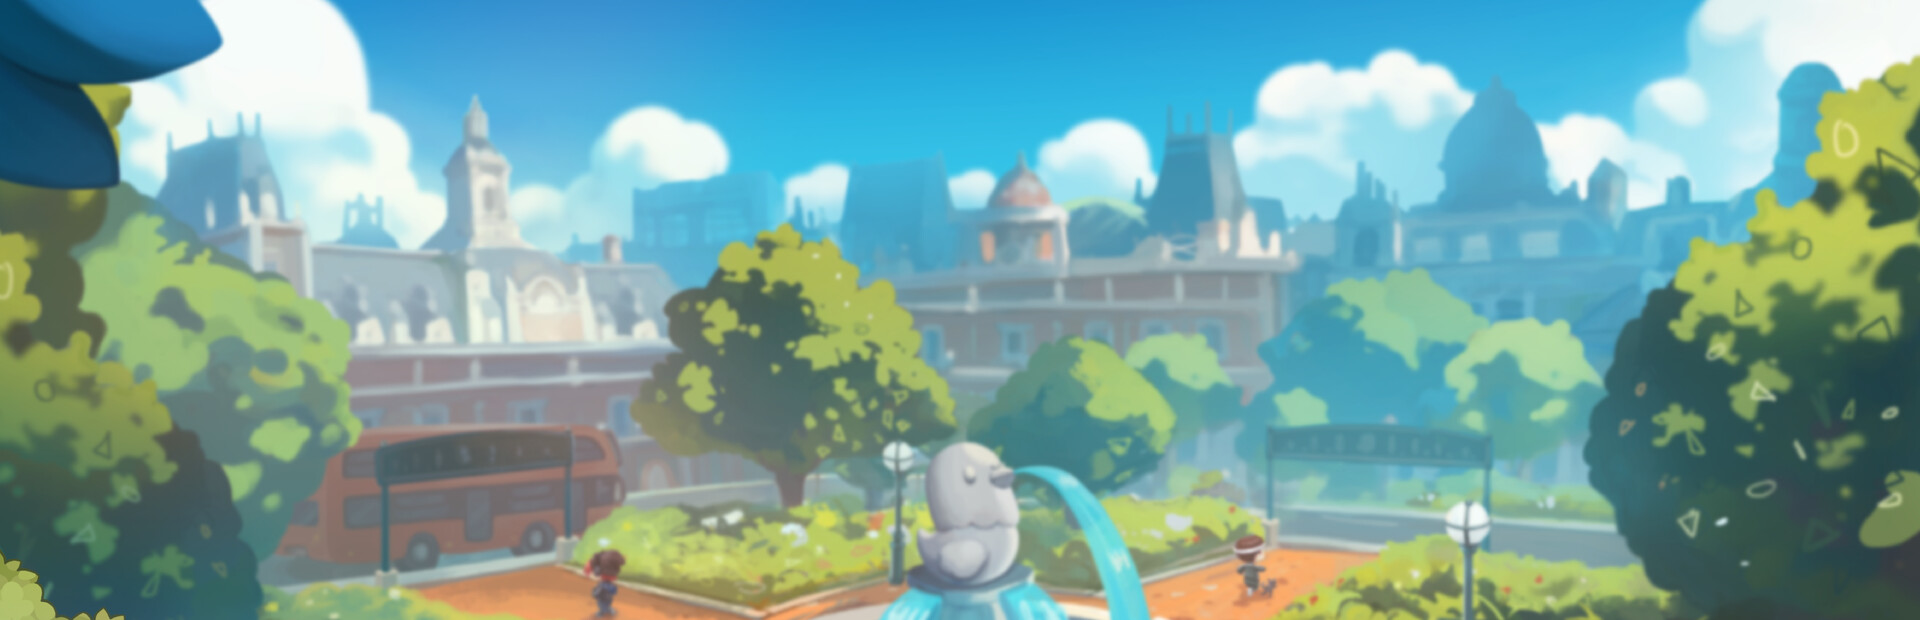 Little Sim World on Steam